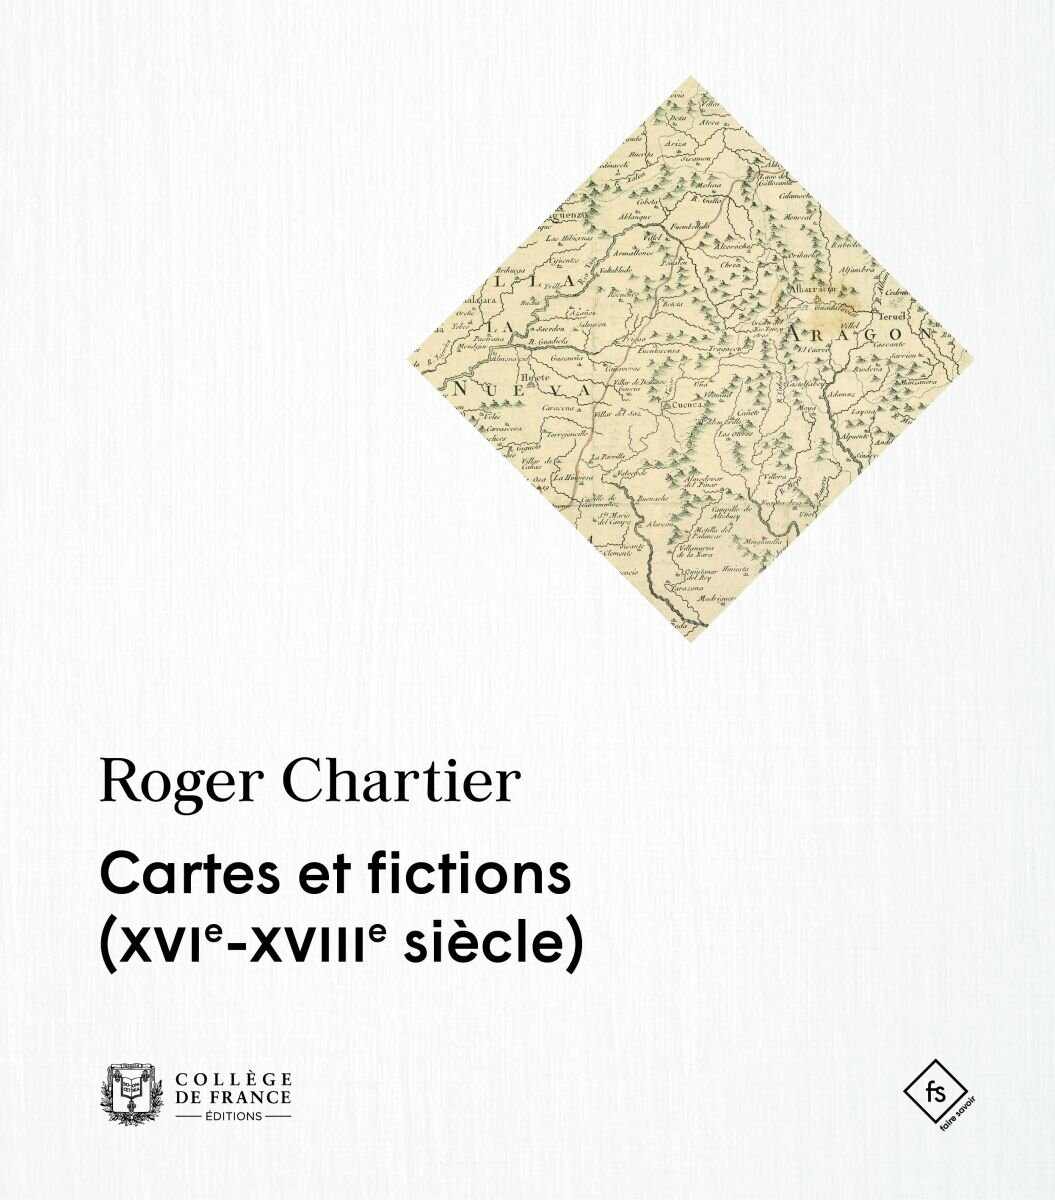 Couverture-Cartes-et-fictions-Chartier.jpg